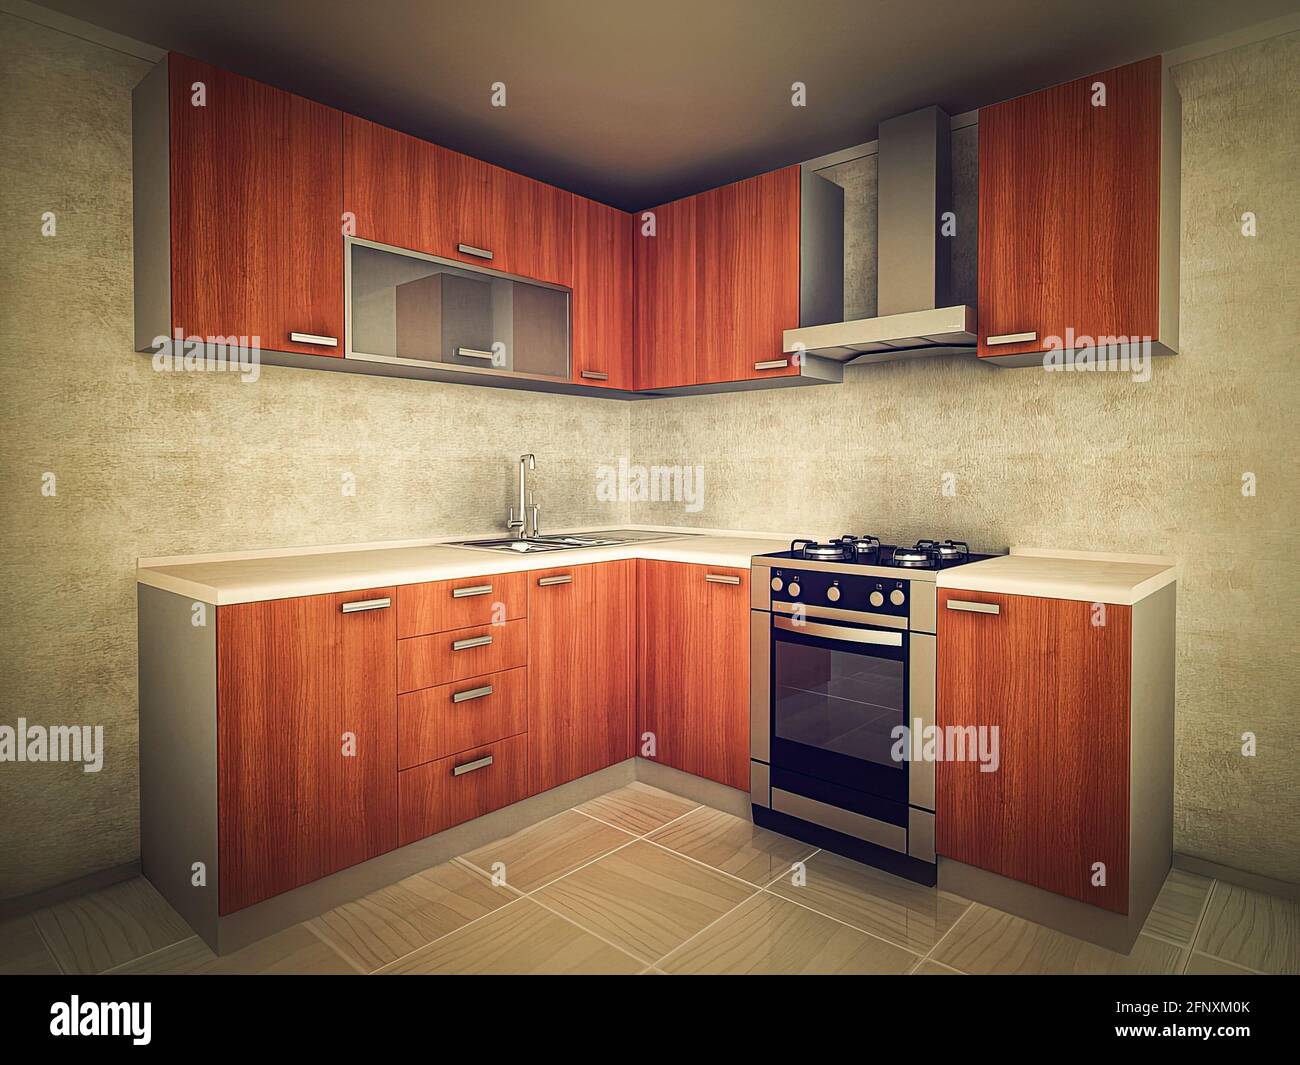 illustrazione in 3d del concetto di cucina moderna in stile tradizionale. Design interno della cucina in colori chiari. Foto Stock